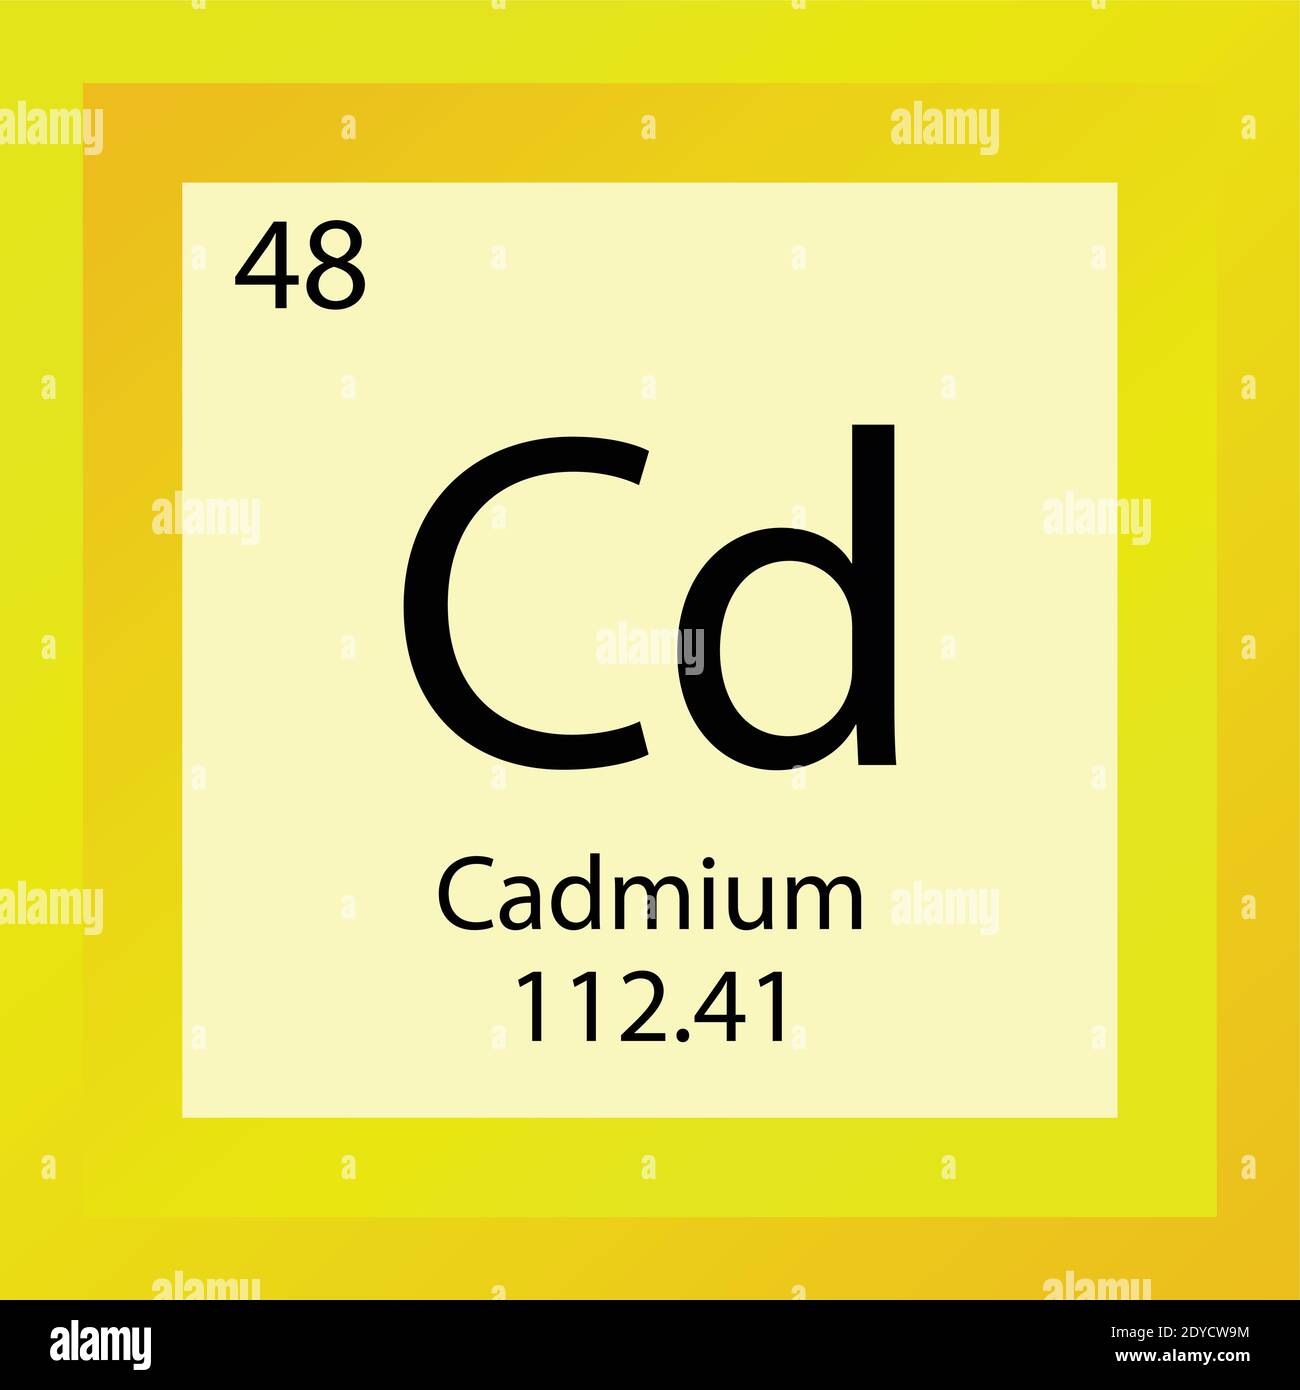 CD cadmium élément chimique Tableau périodique. Illustration d'un vecteur à  élément unique, icône d'élément de métaux de transition avec masse molaire  et nombre atomique Image Vectorielle Stock - Alamy